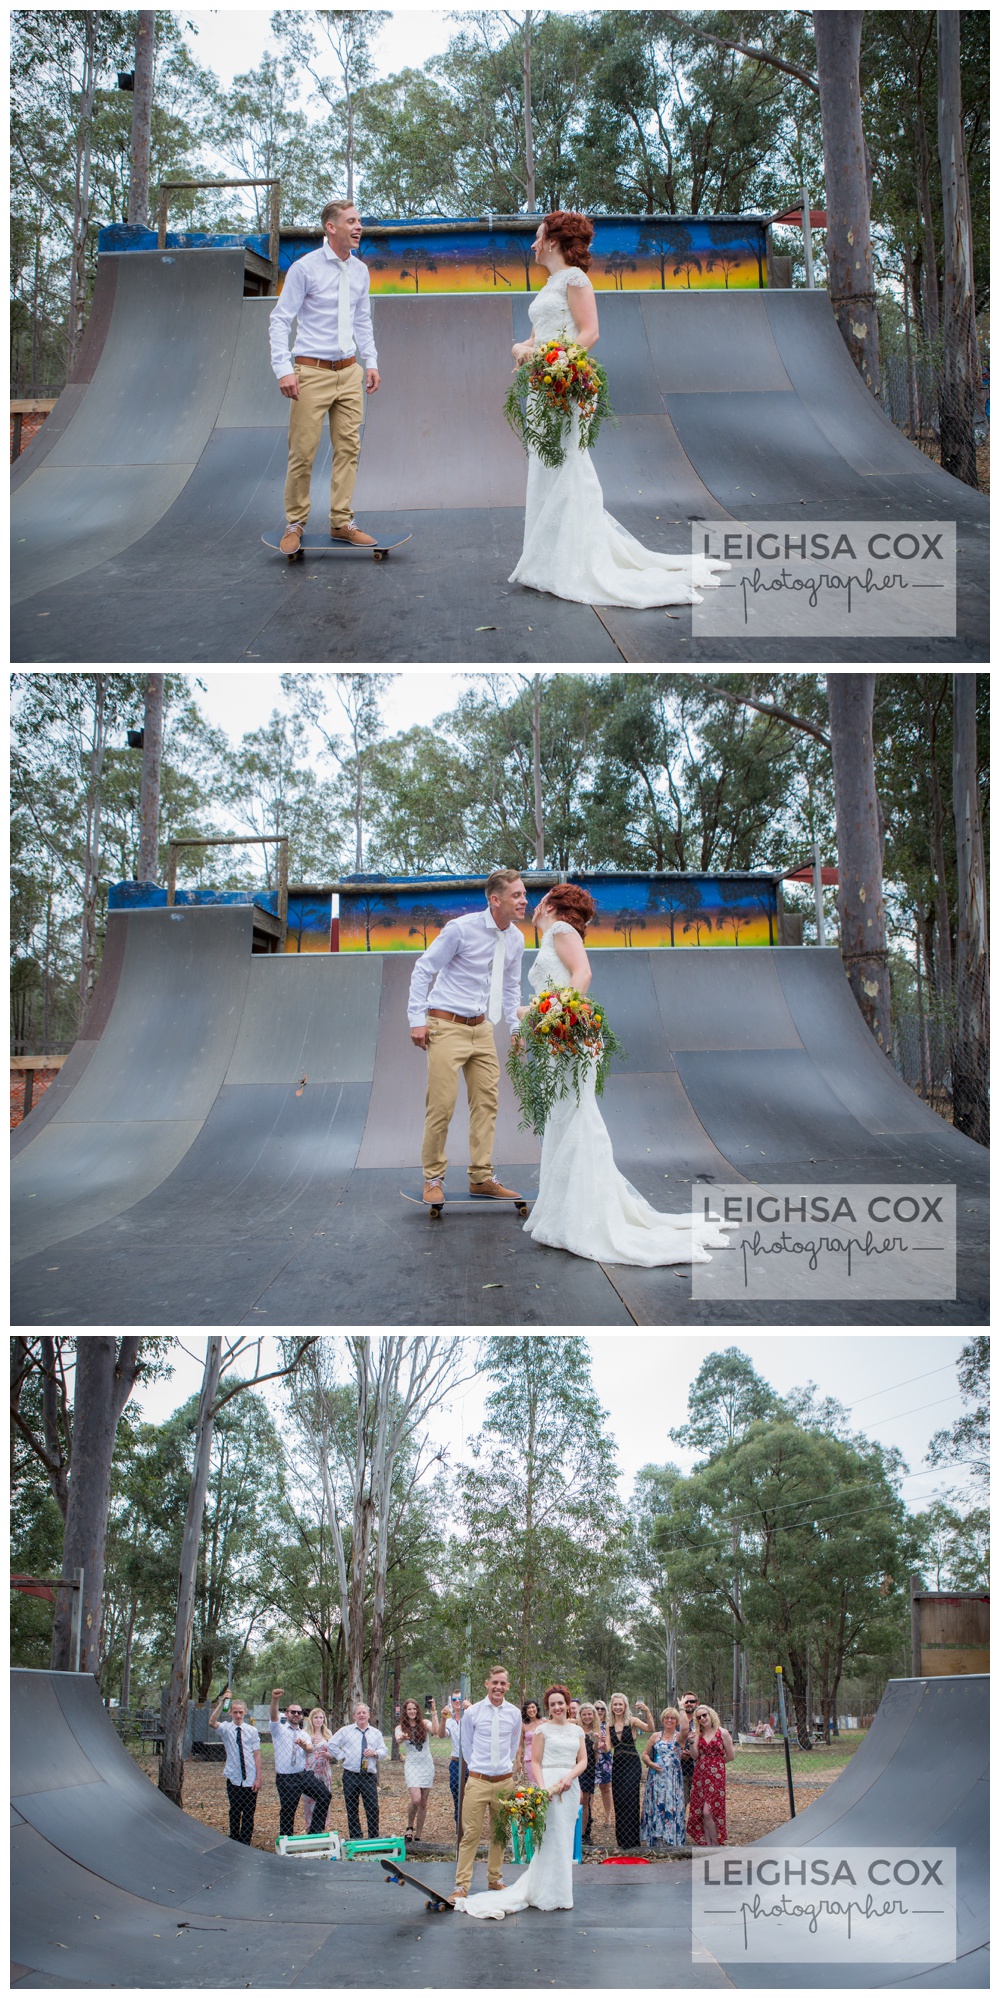 skateboarding groom